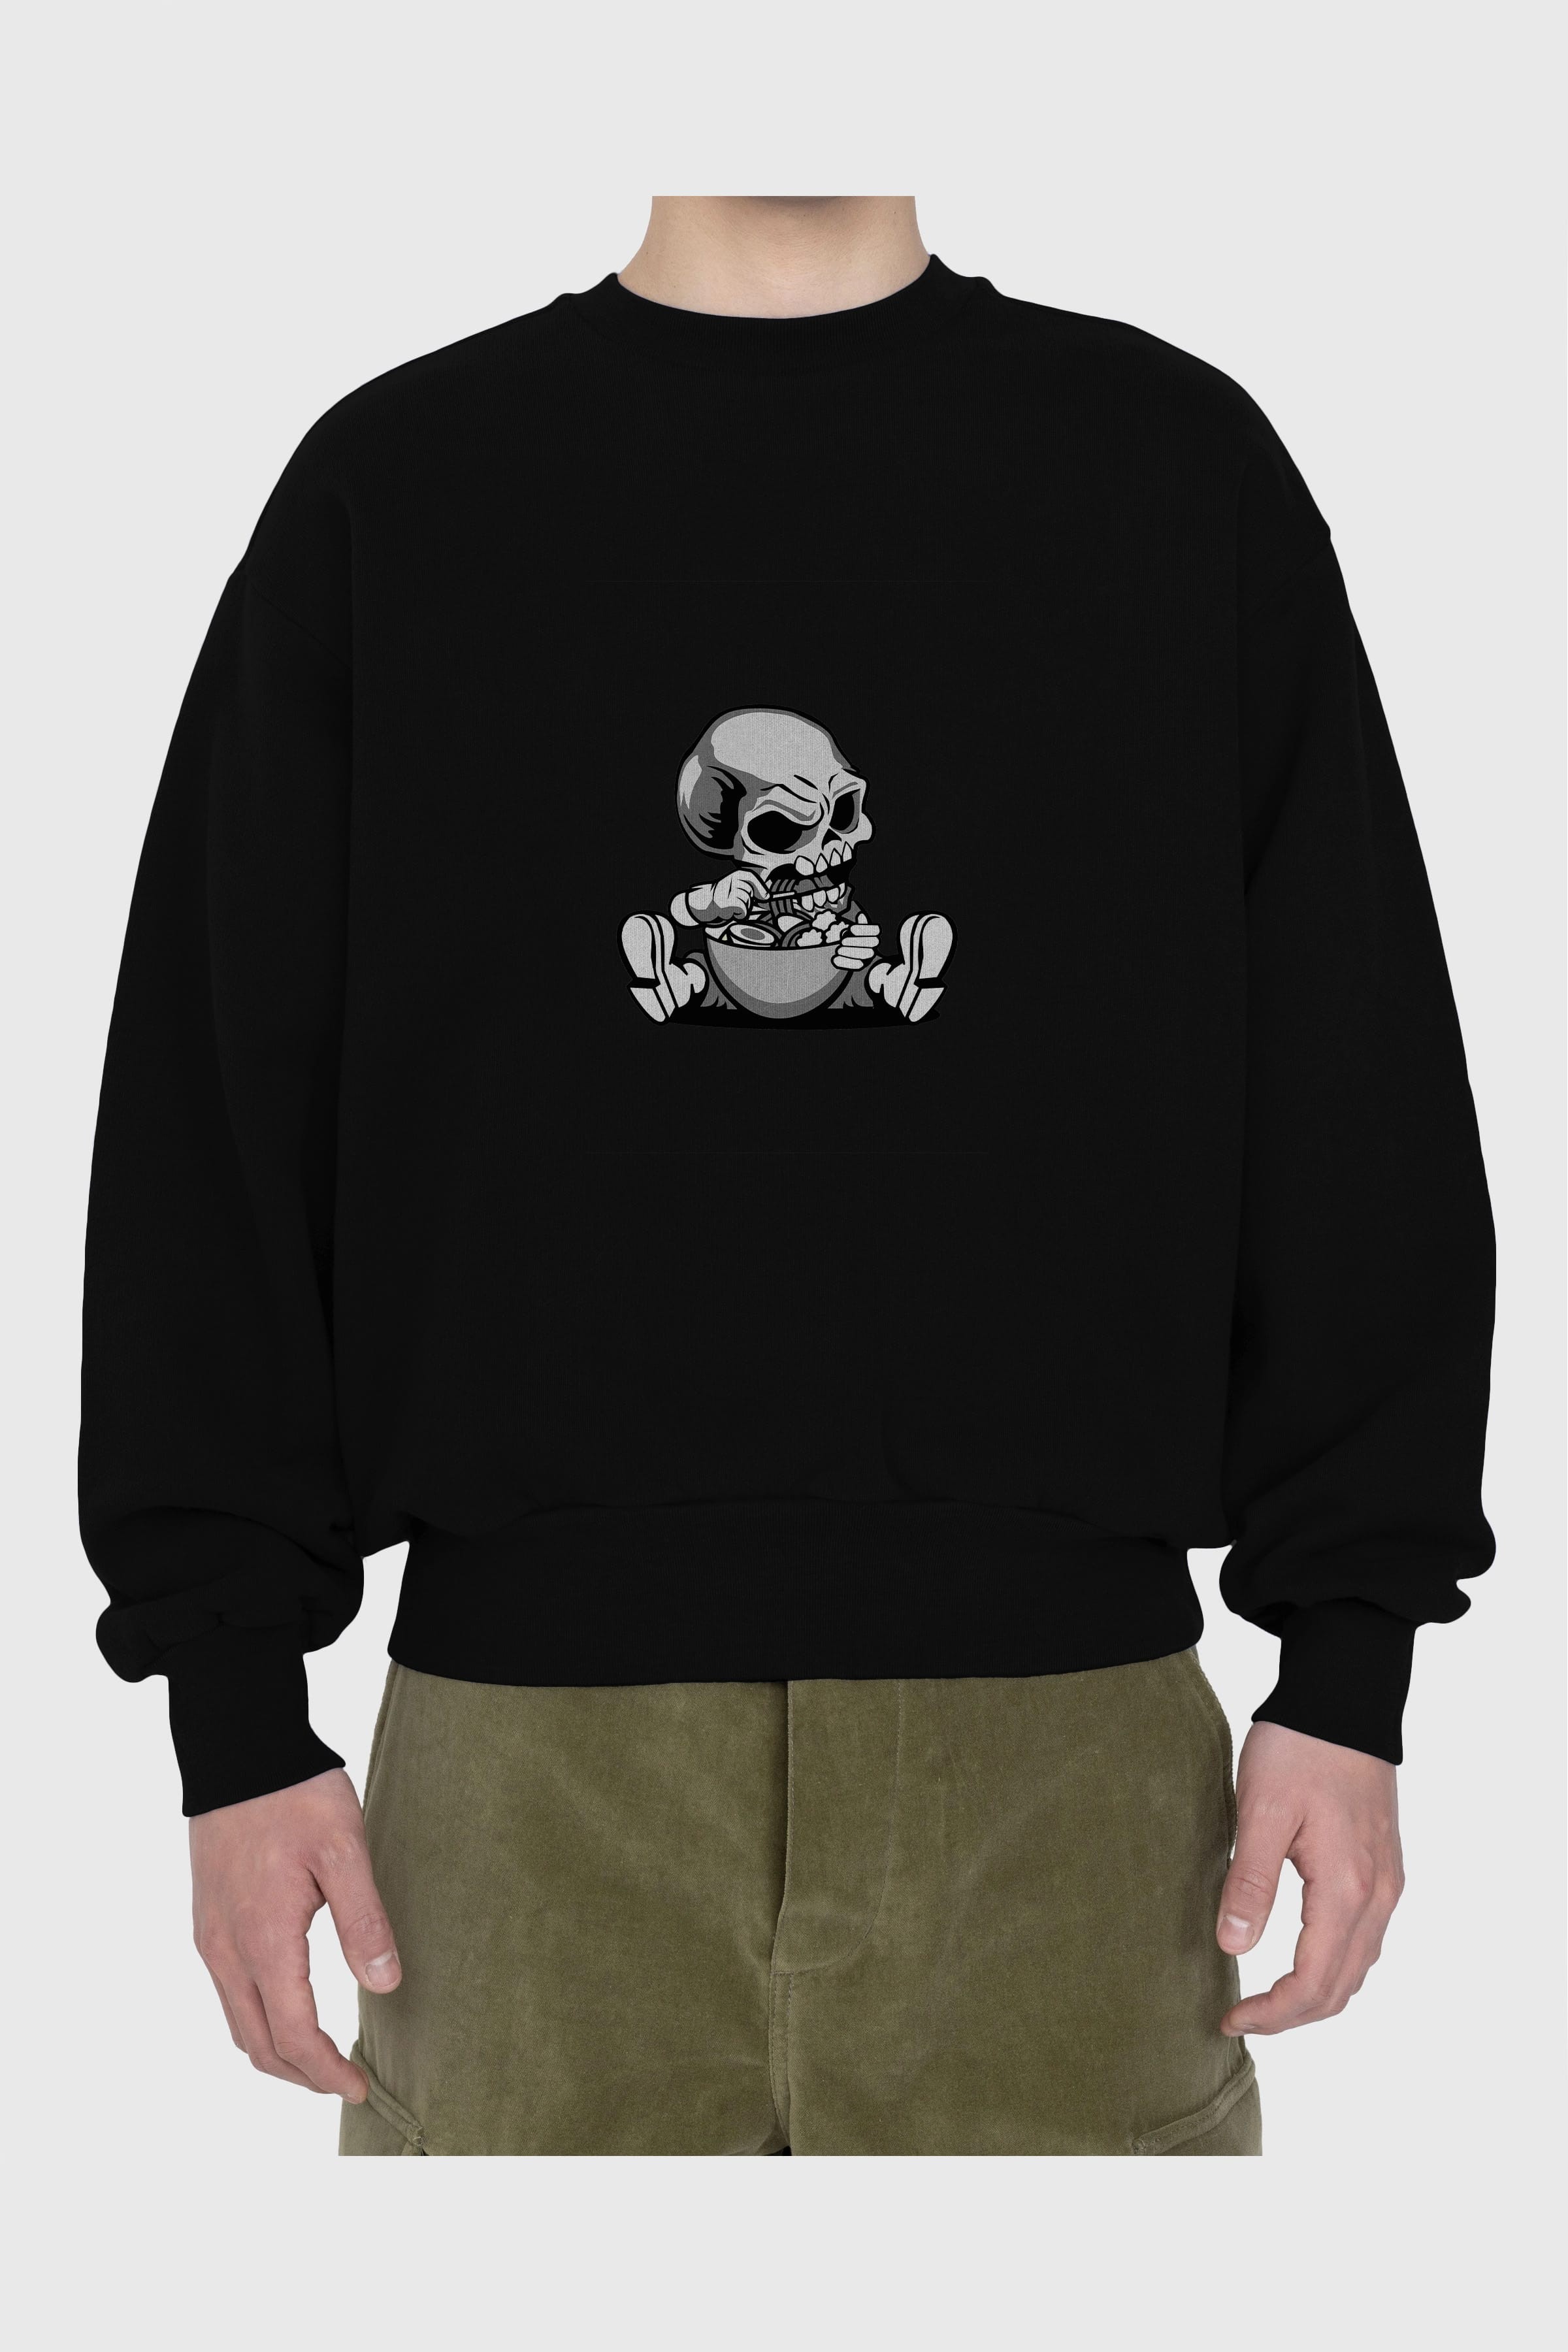 Skull Eat Ramen Ön Baskılı Oversize Sweatshirt Erkek Kadın Unisex